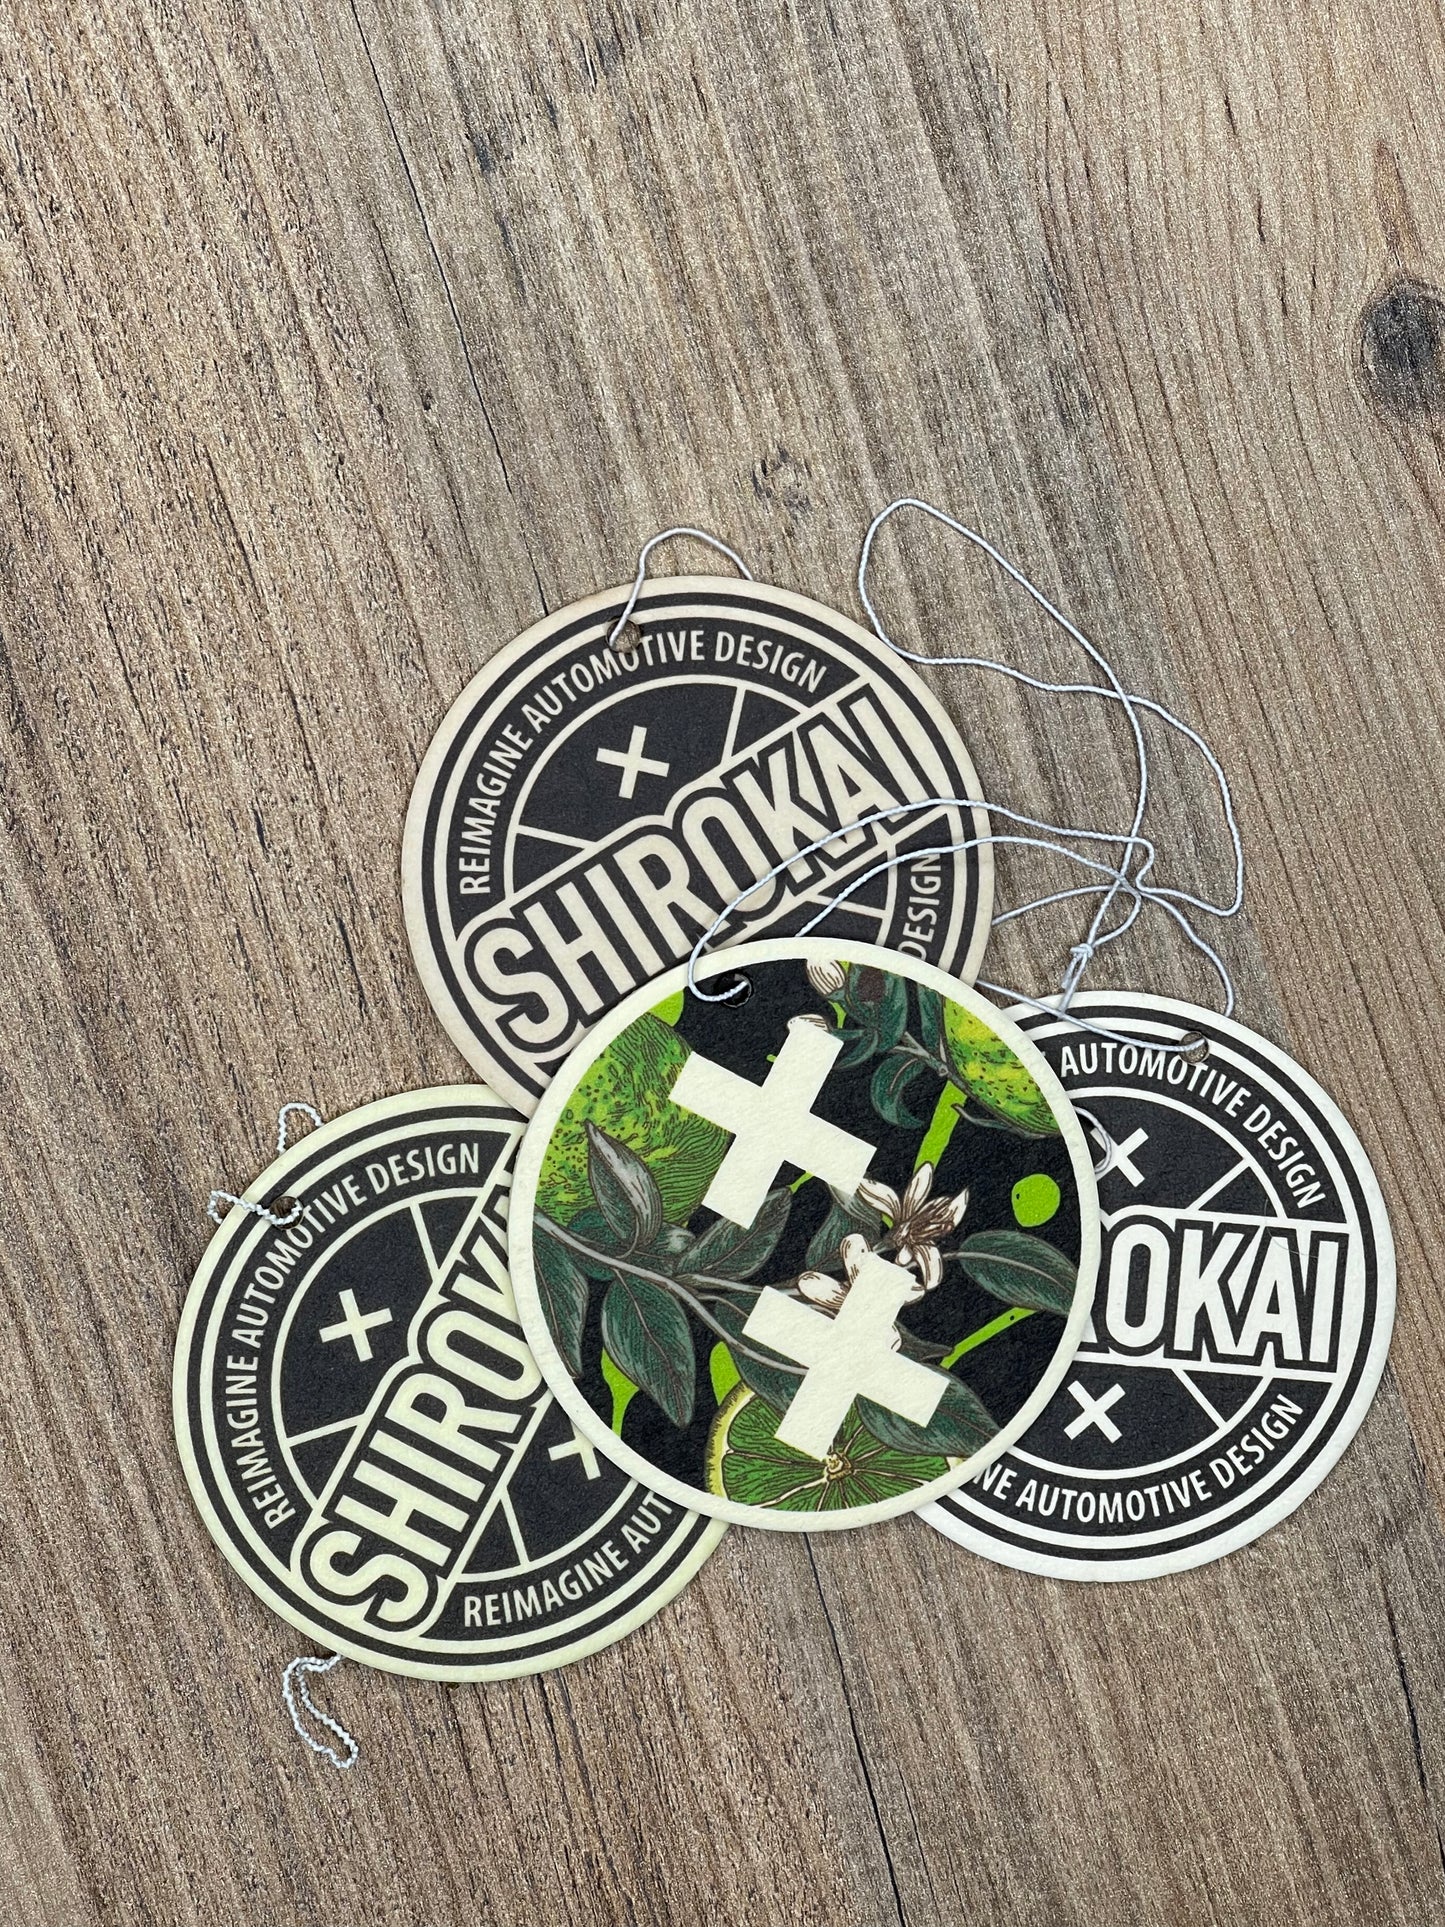 
                  
                    SHIROKAI Logo exclusive aroma Air-freshener - SHIROKAI - widebody kits 
                  
                